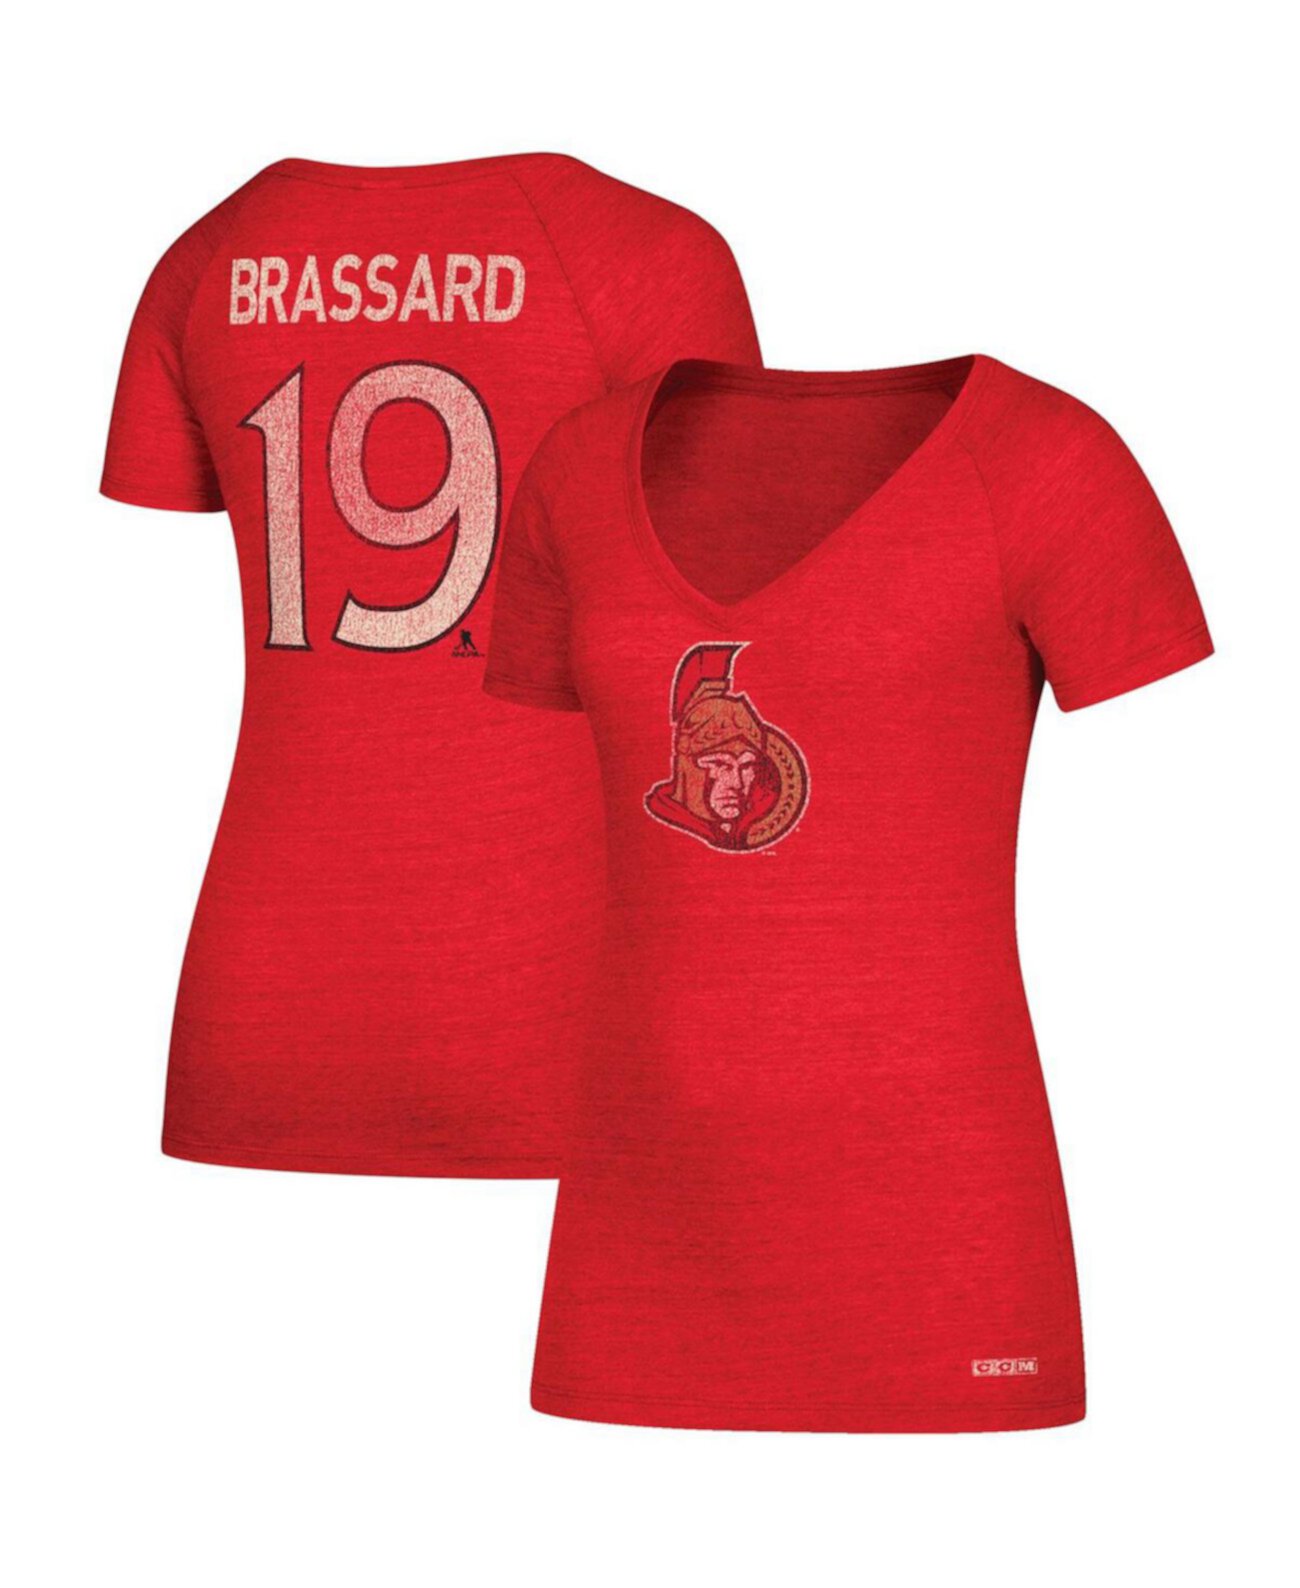 Женская футболка Derick Brassard Red Ottawa Senators с именем и номером и v-образным вырезом CCM